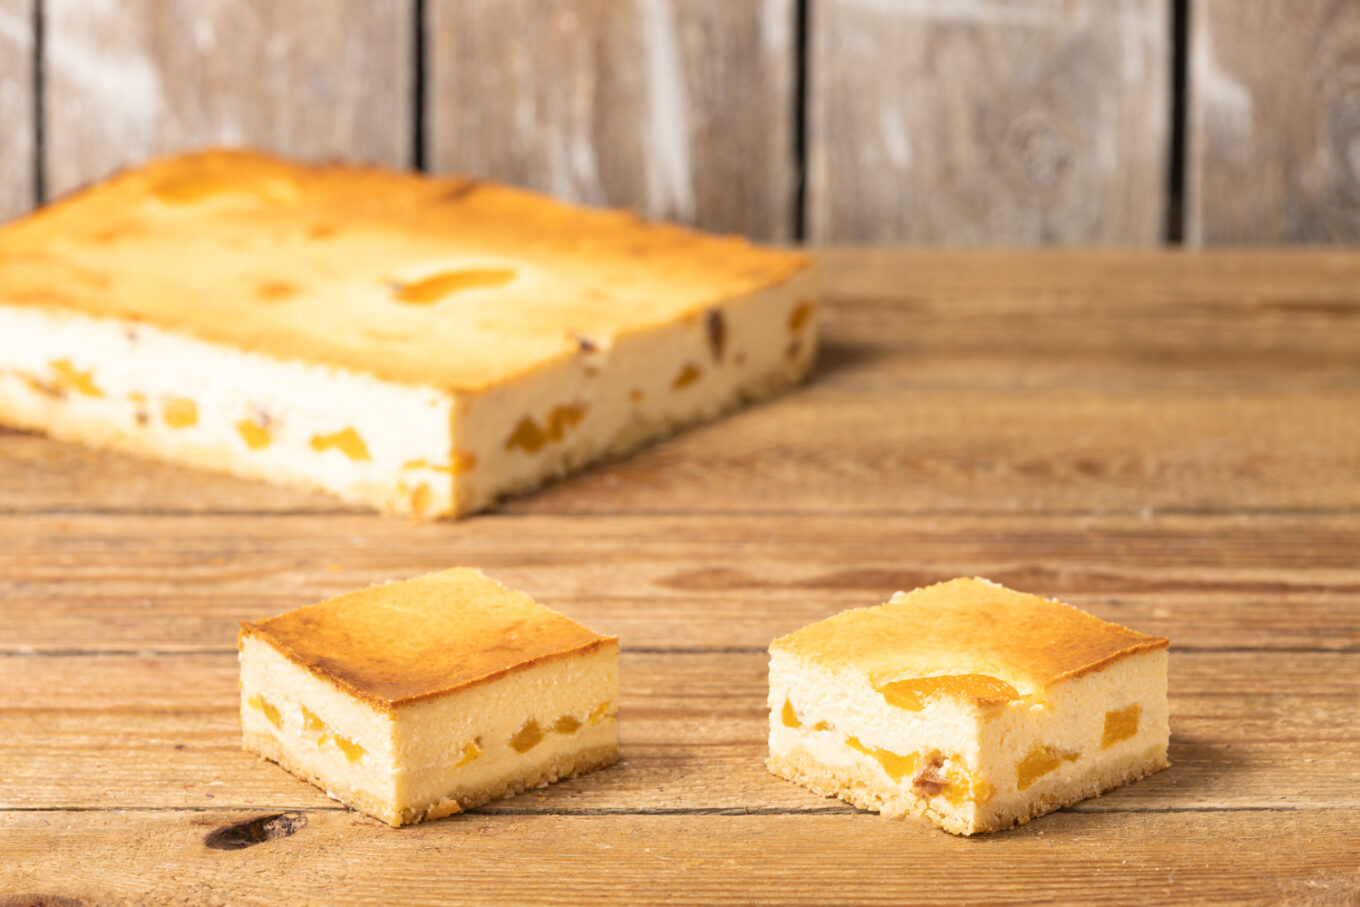 Tarta de queso con melocotones Cukiernia Jacek Placek es sinónimo del sabor de las tartas caseras elaboradas con productos naturales.